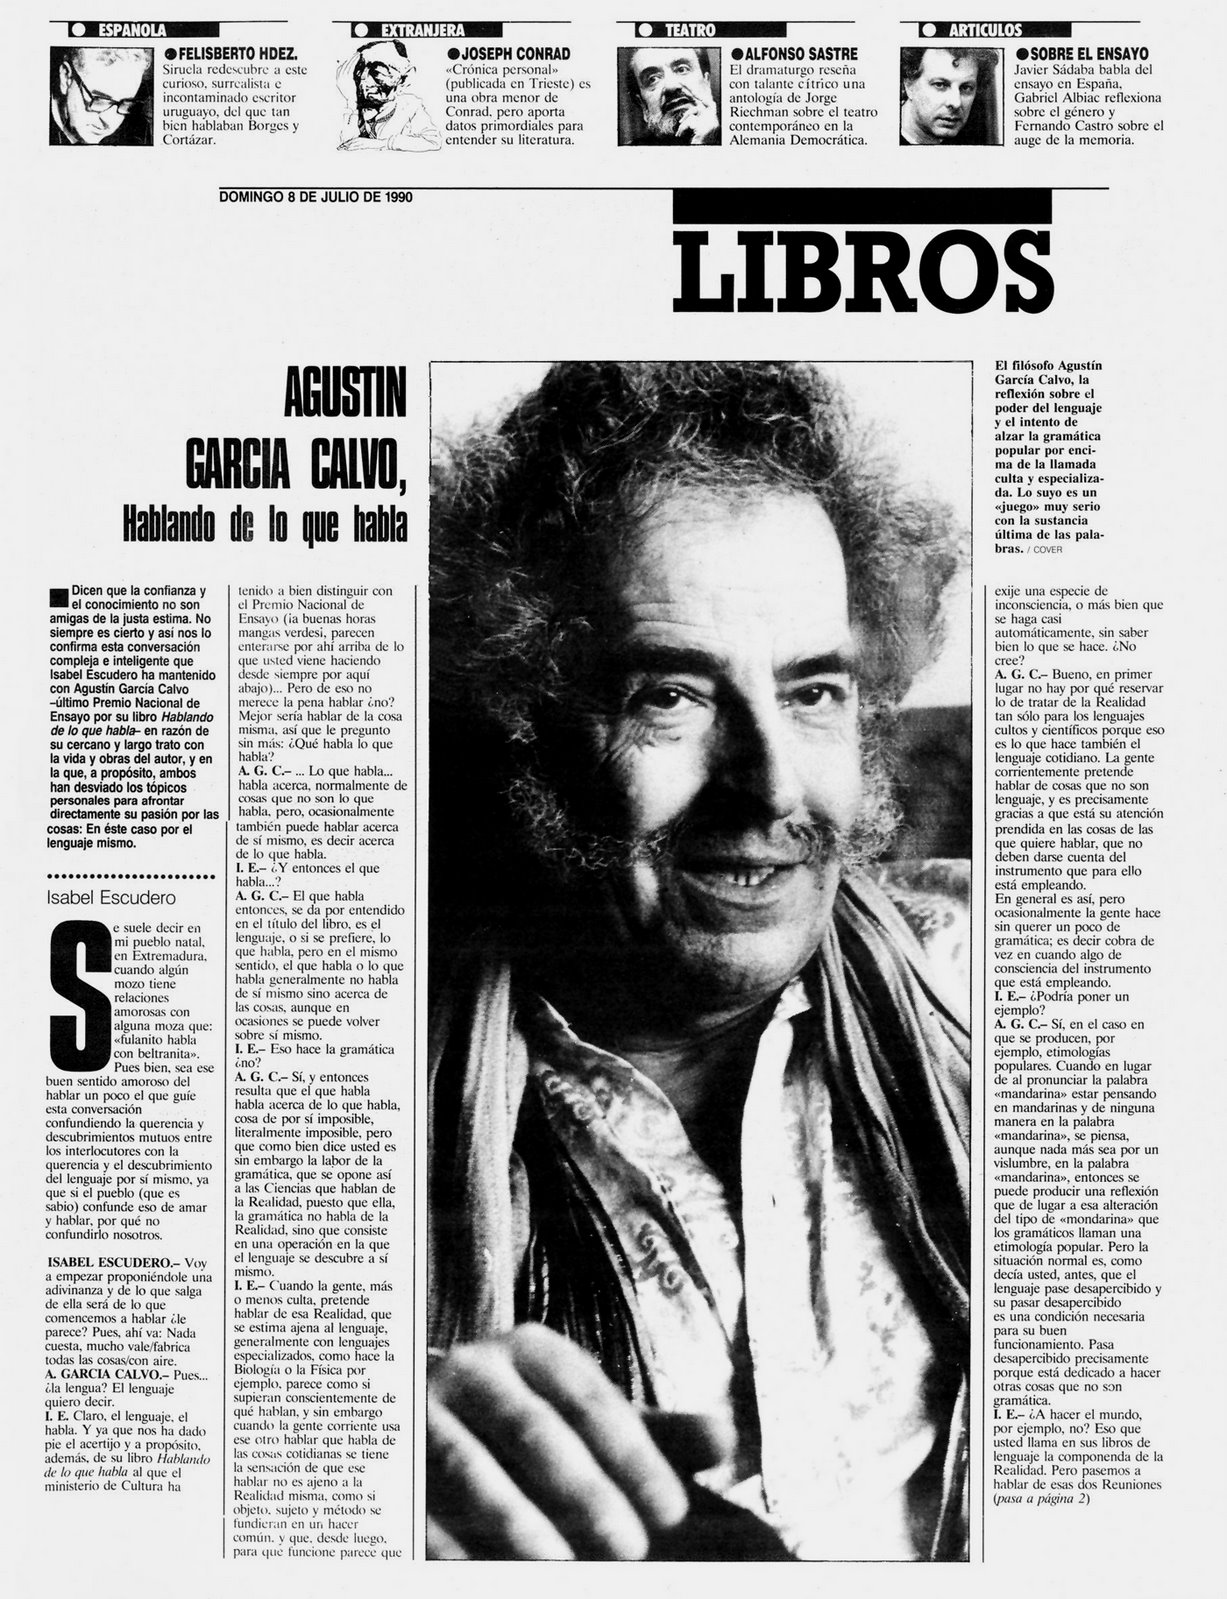 [Agustín+García+Calvo+Hablando+de+lo+que+habla+julio+1990+El+Mundo,+I.jpg]